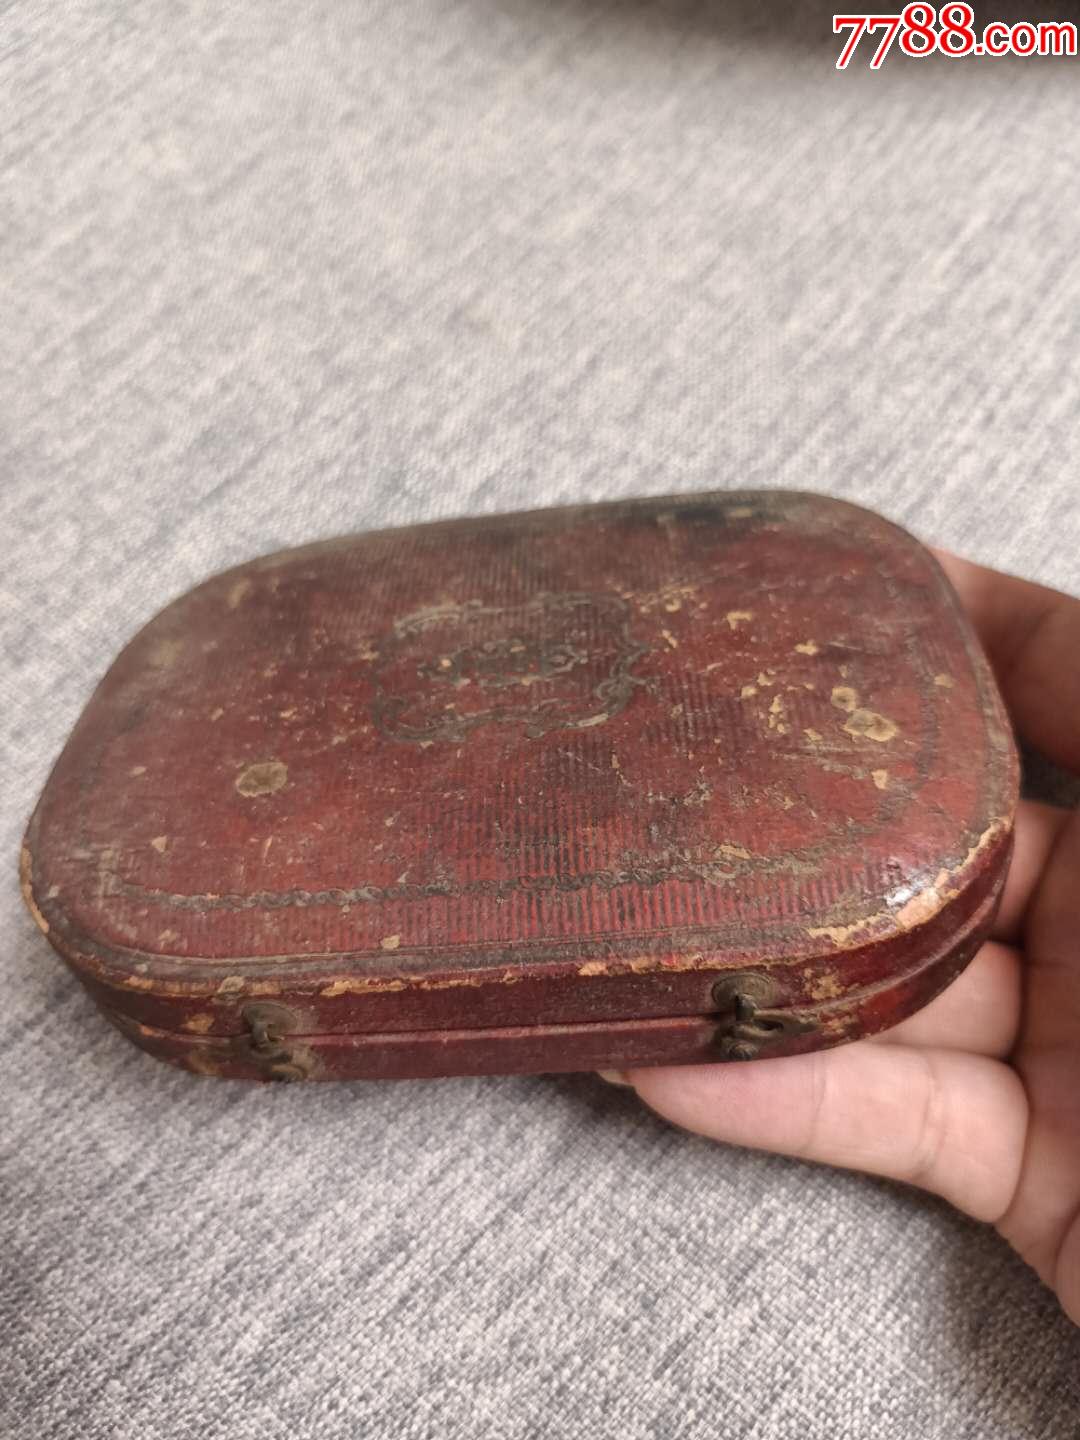 民国时期的老物件(怀表盒子)古玩杂项民俗收藏